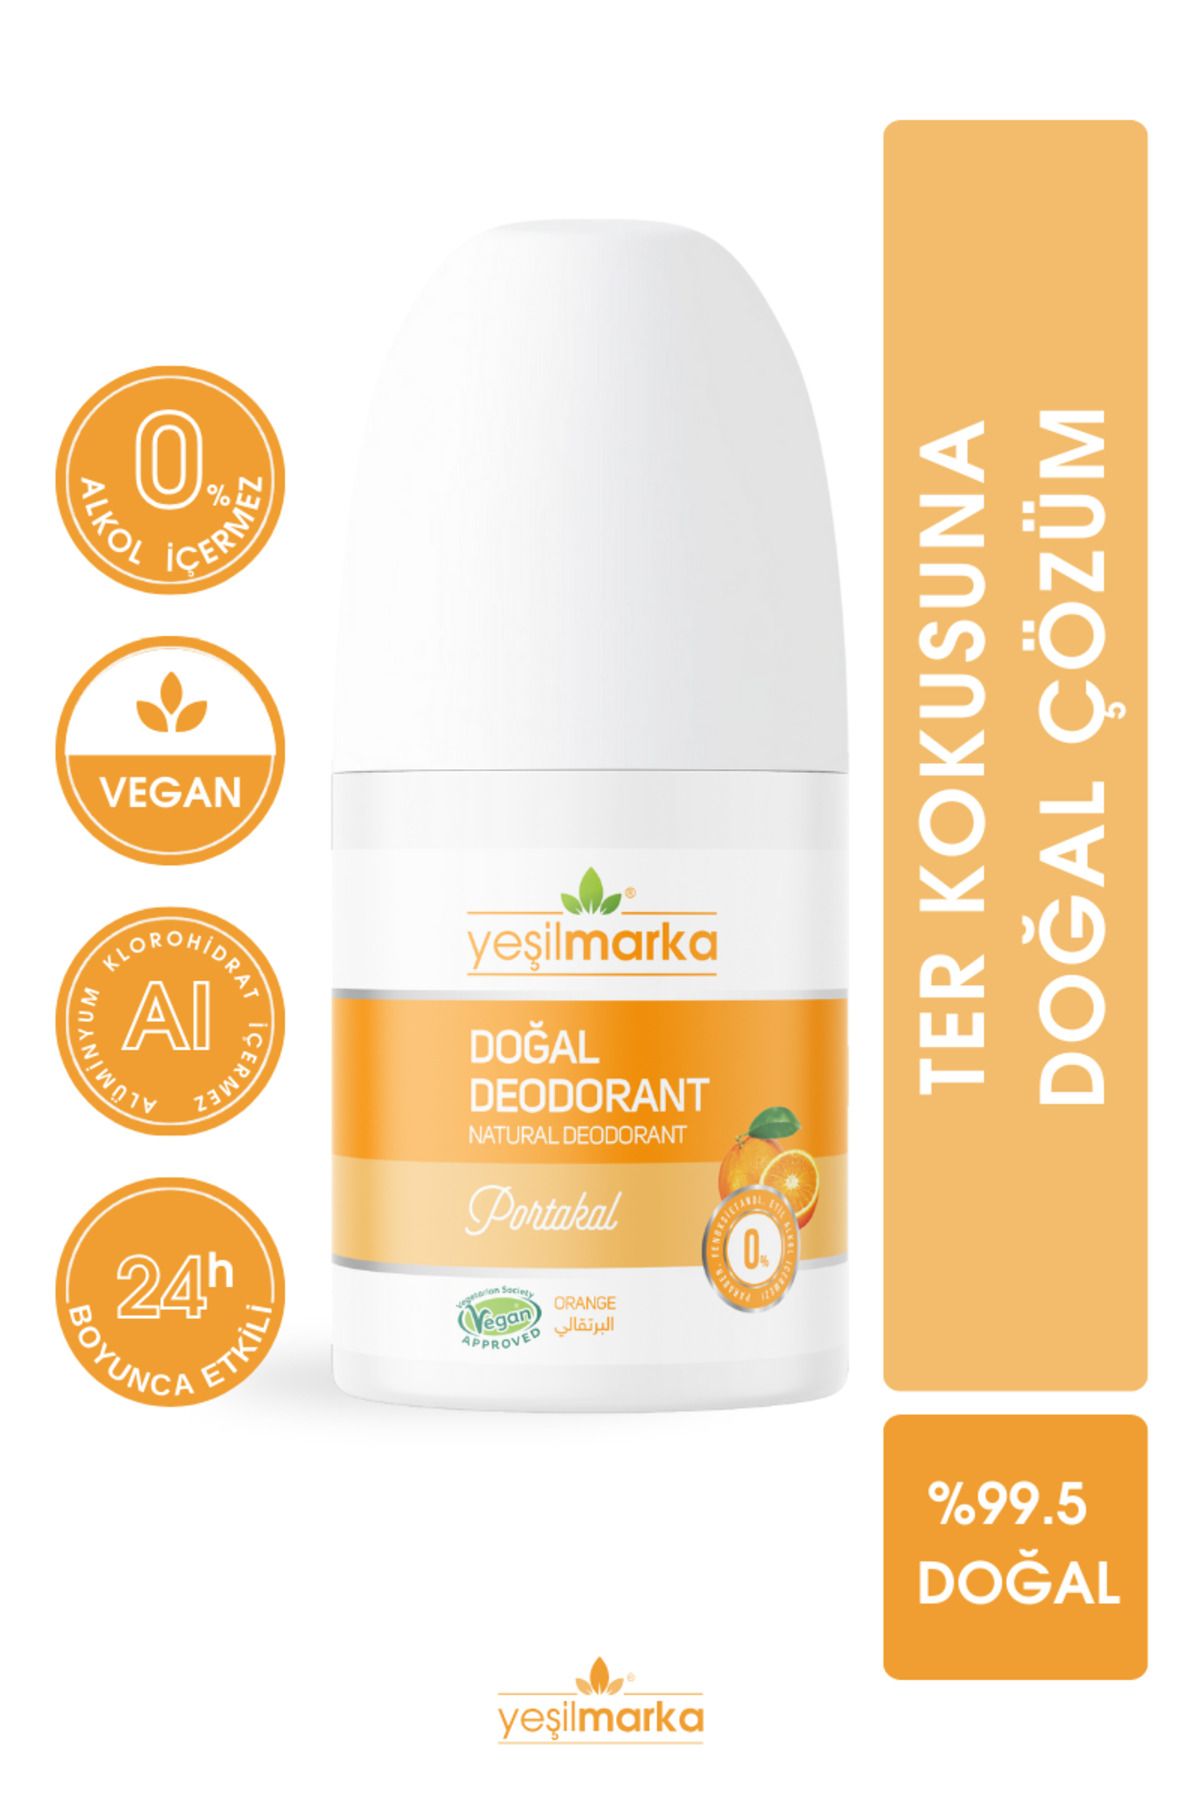 yeşilmarka Doğal Deodorant– Portakal- Vegan- Alkolsüz- Parabensiz- Aluminyum Kimyasalı Içermez